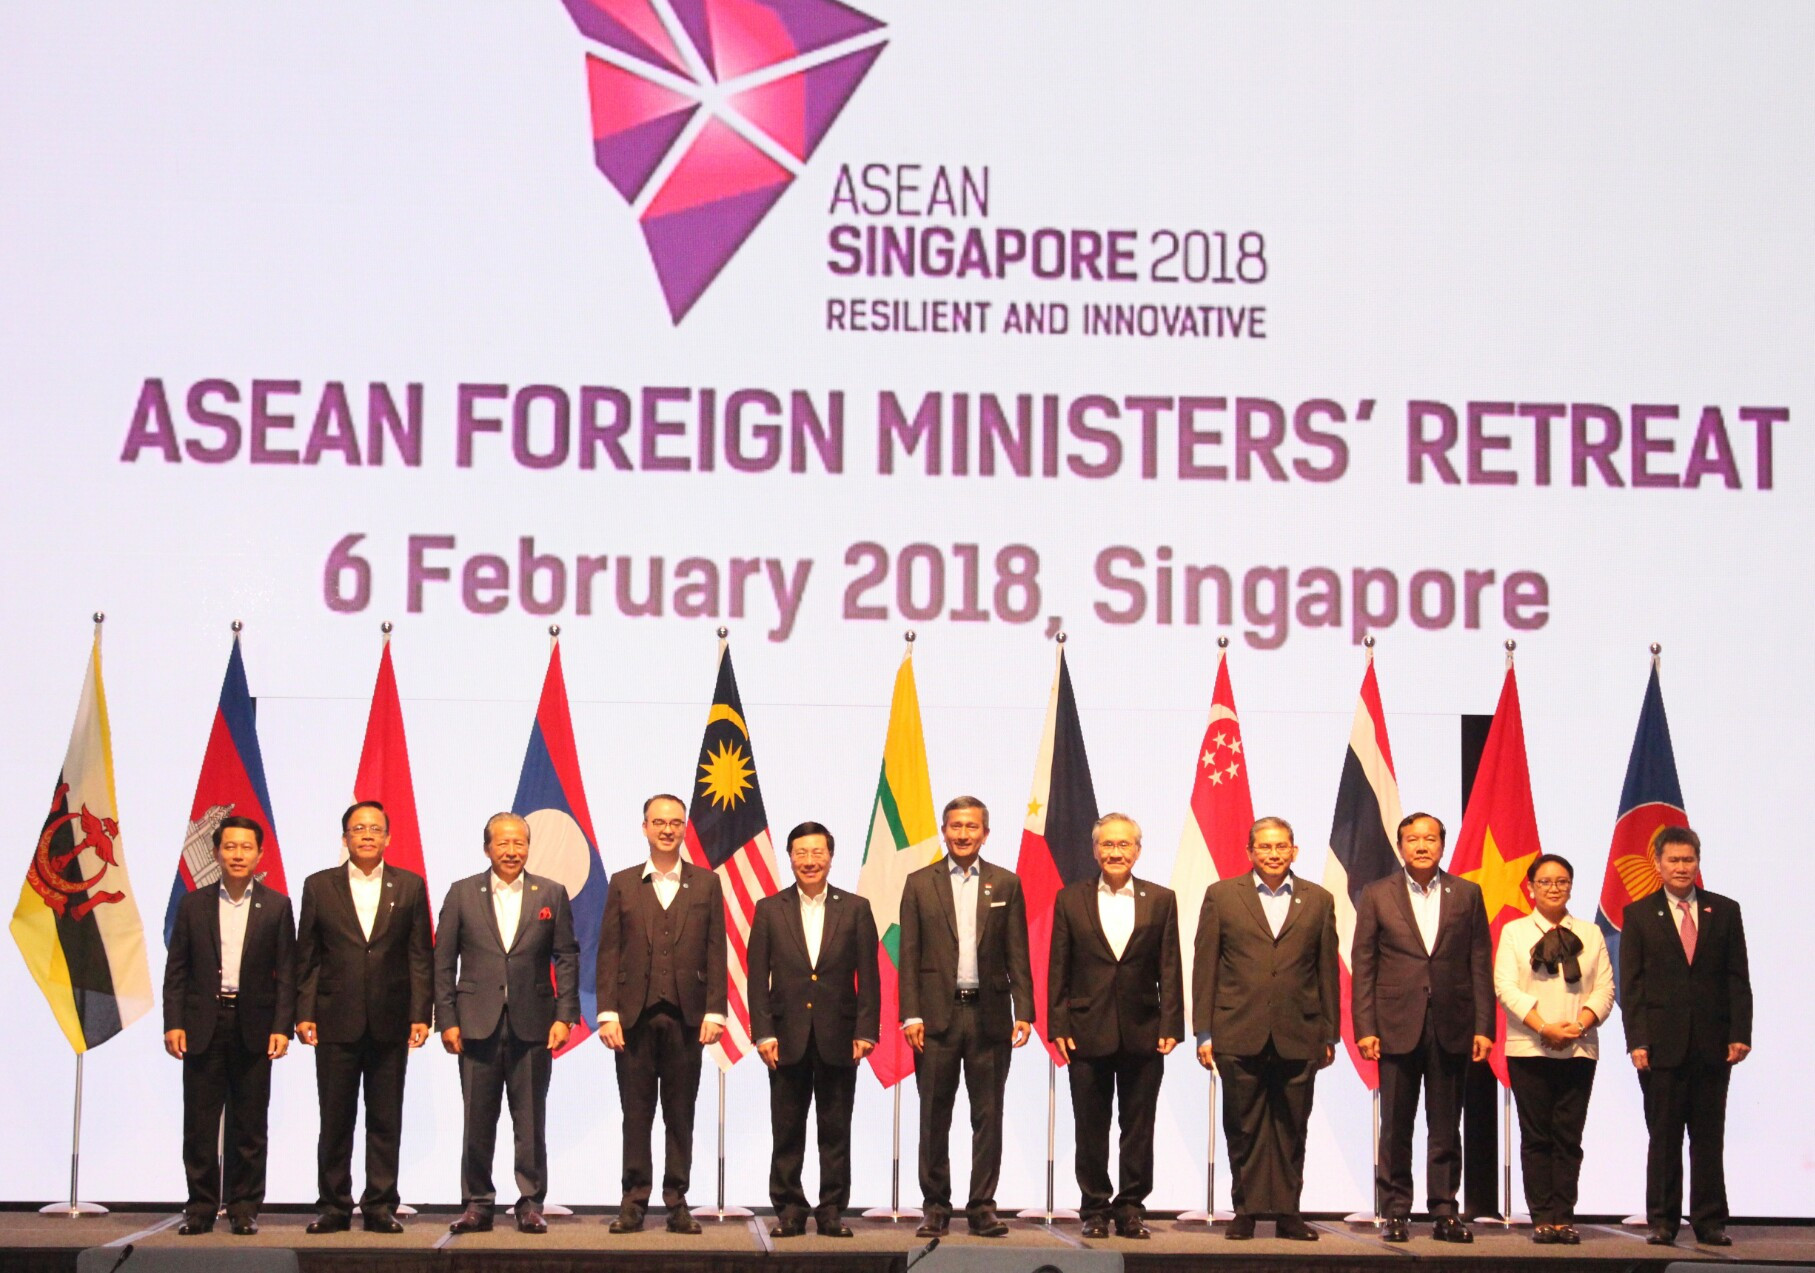 Tình hình Biển Đông trong tháng đầu của năm 2018 cũng tương đối lắng dịu. Tại Hội nghị hẹp Bộ trưởng Ngoại giao ASEAN diễn ra tại Singapore, các nước một lần nữa đã khẳng định lập trường về Biển Đông và nhất trí với đề xuất về triển khai đàm phán thực chất giữa ASEAN - Trung Quốc về Bộ Quy tắc ứng xử COC vào thời gian tới.